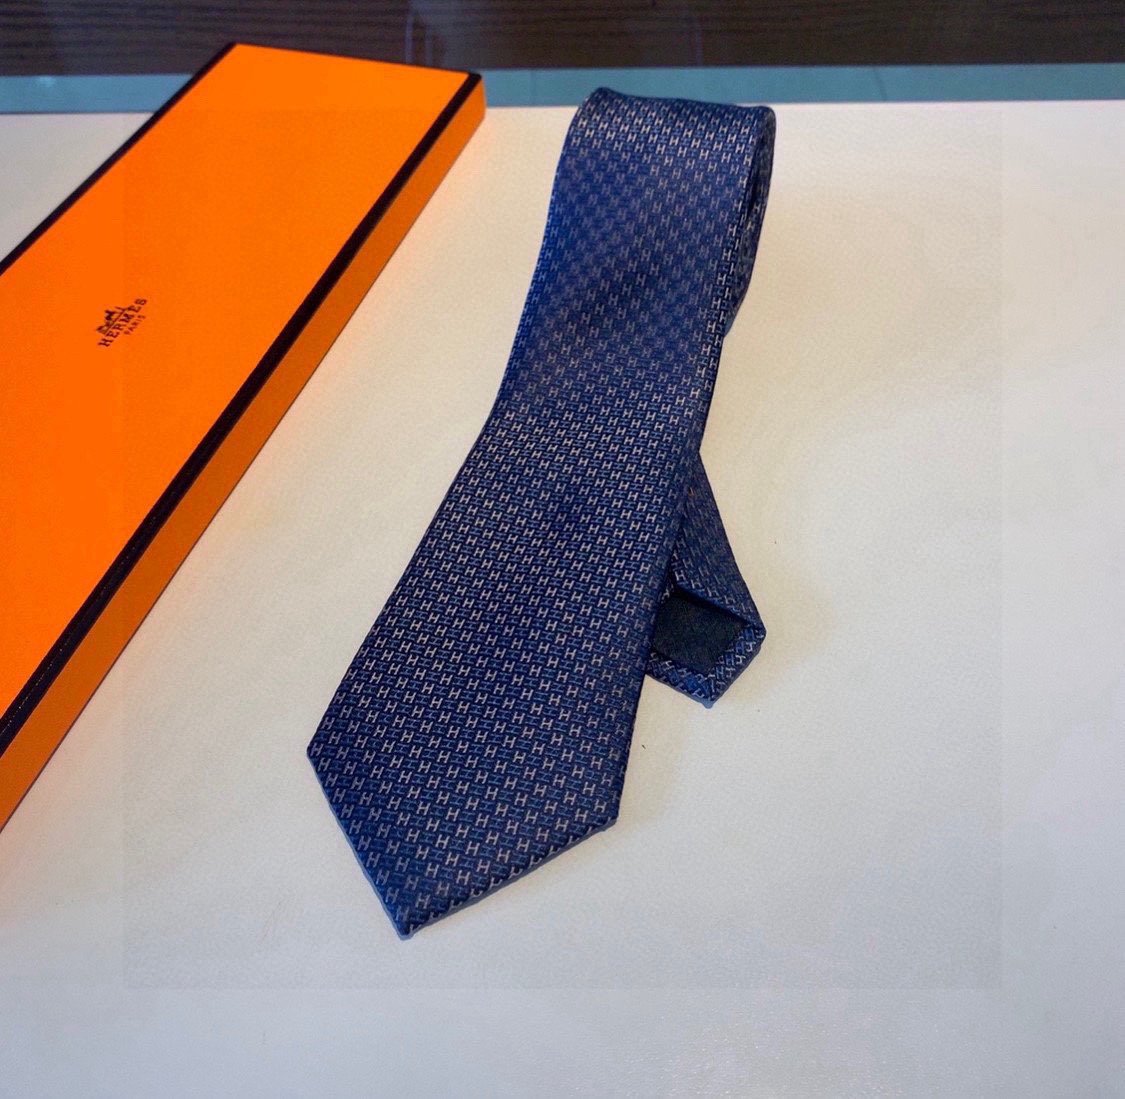 配包装领带新款出货啦️️爱马仕H幻影男士新款领带系列让男士可以充分展示自己个性100%顶级斜纹真丝手工定